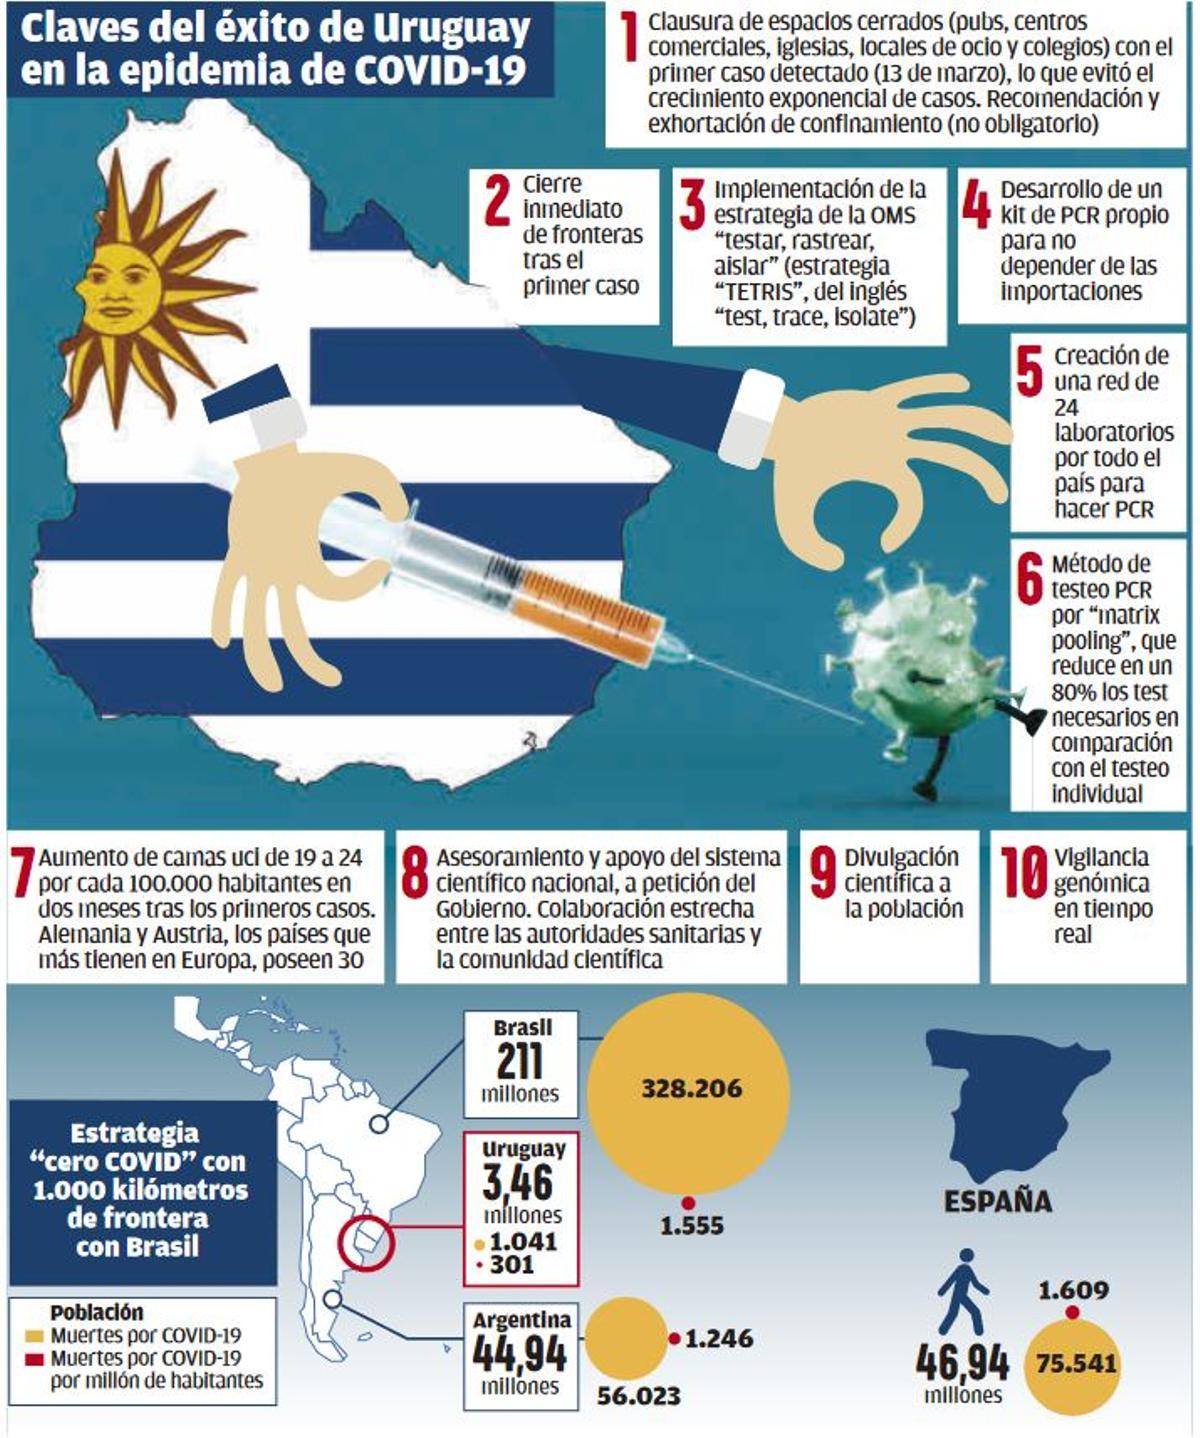 Claves del éxito de Uruguay